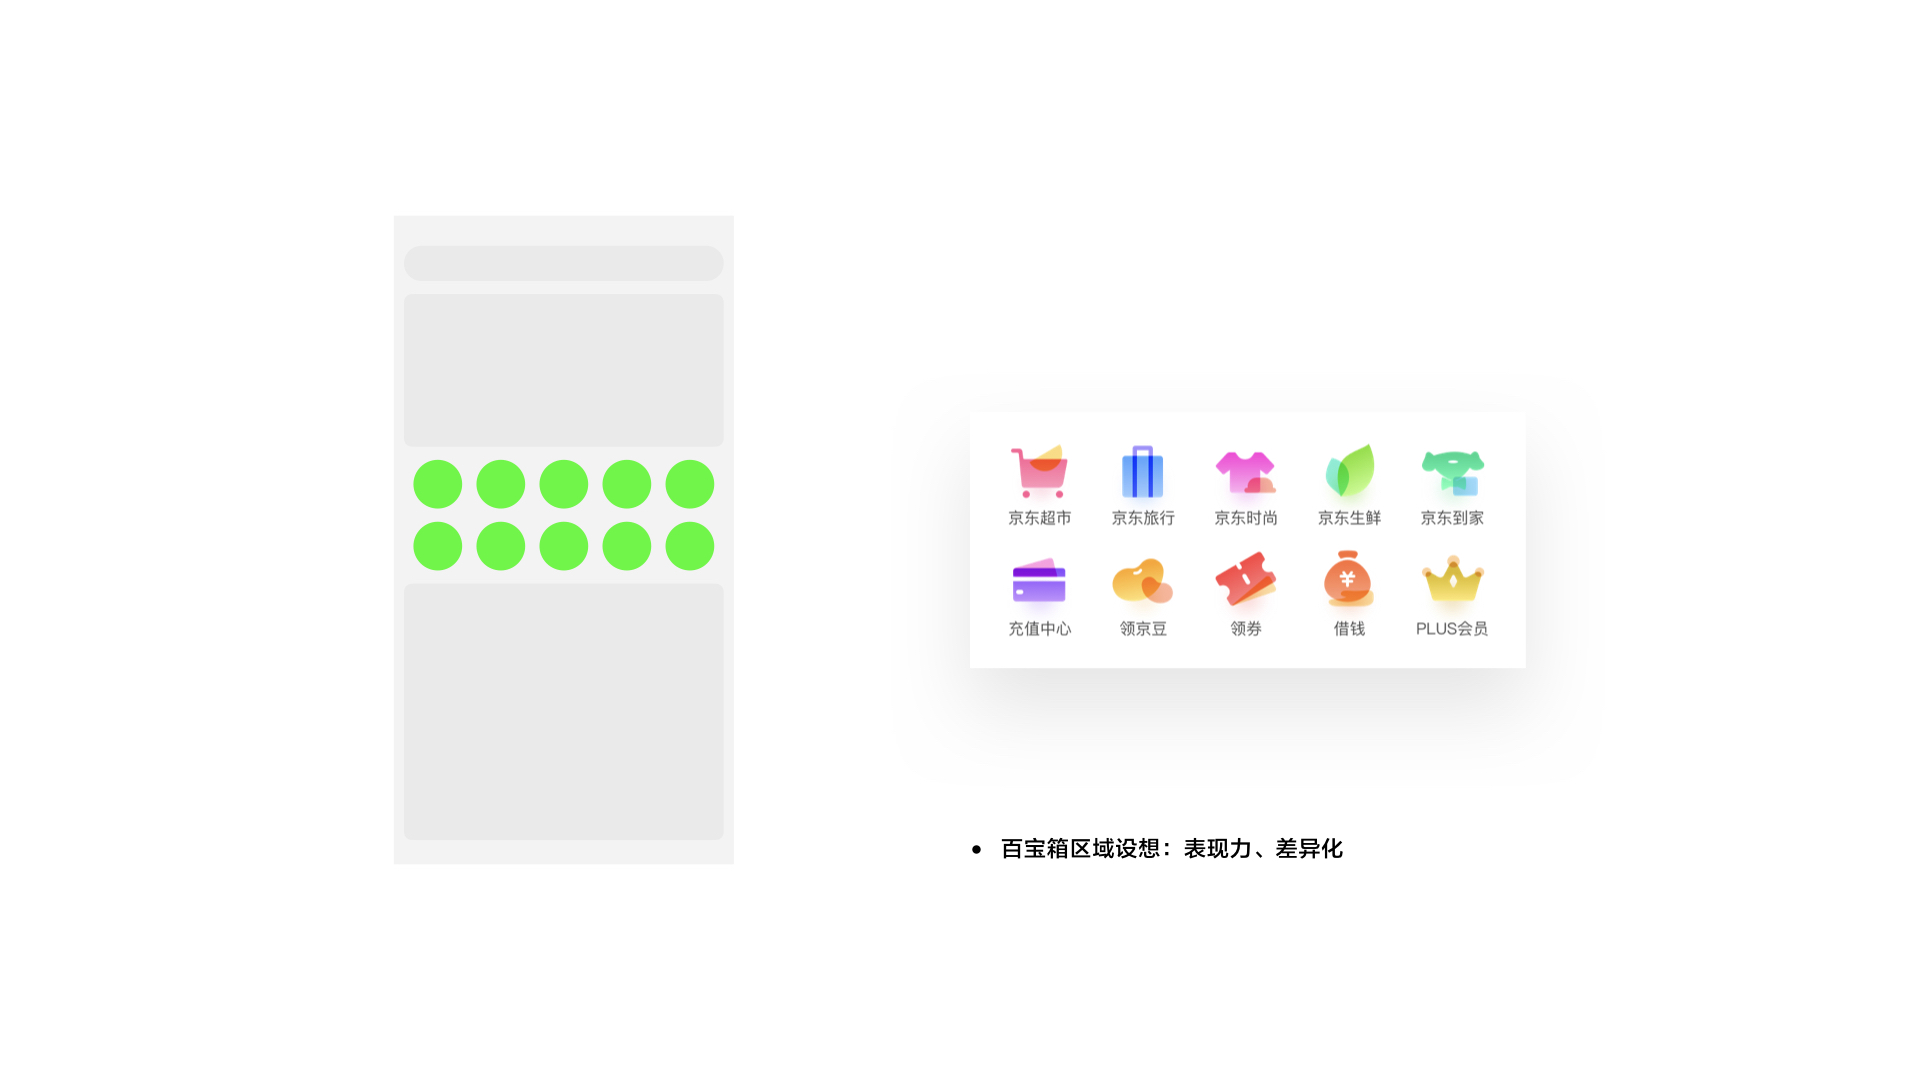 【京东JDC分享】用户界面中的品牌体验设计 - 图22